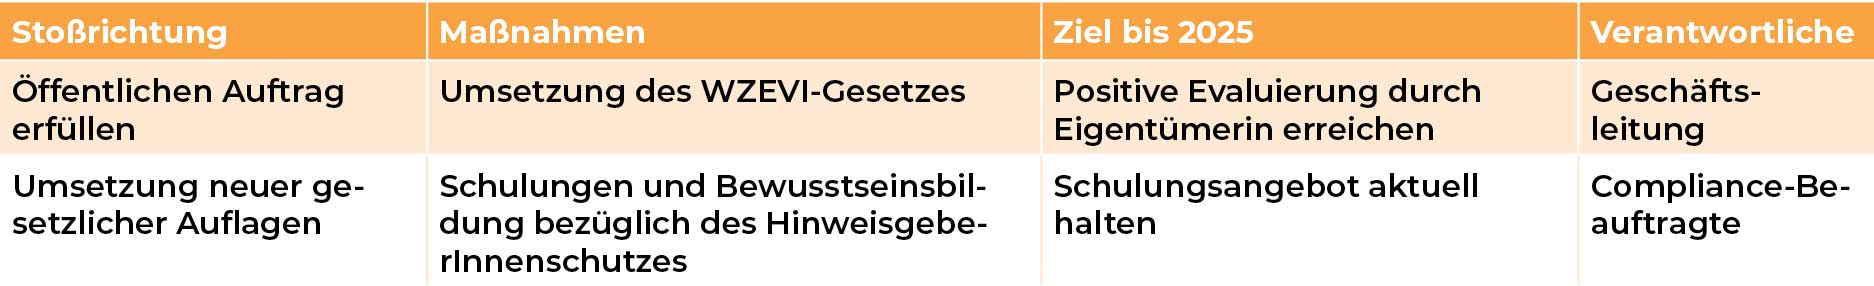 Mediengruppe Wiener Zeitung Nachhaltigkeitsbericht 2023 - 01_mgwznb_cg_Verhaltensregeln-FE